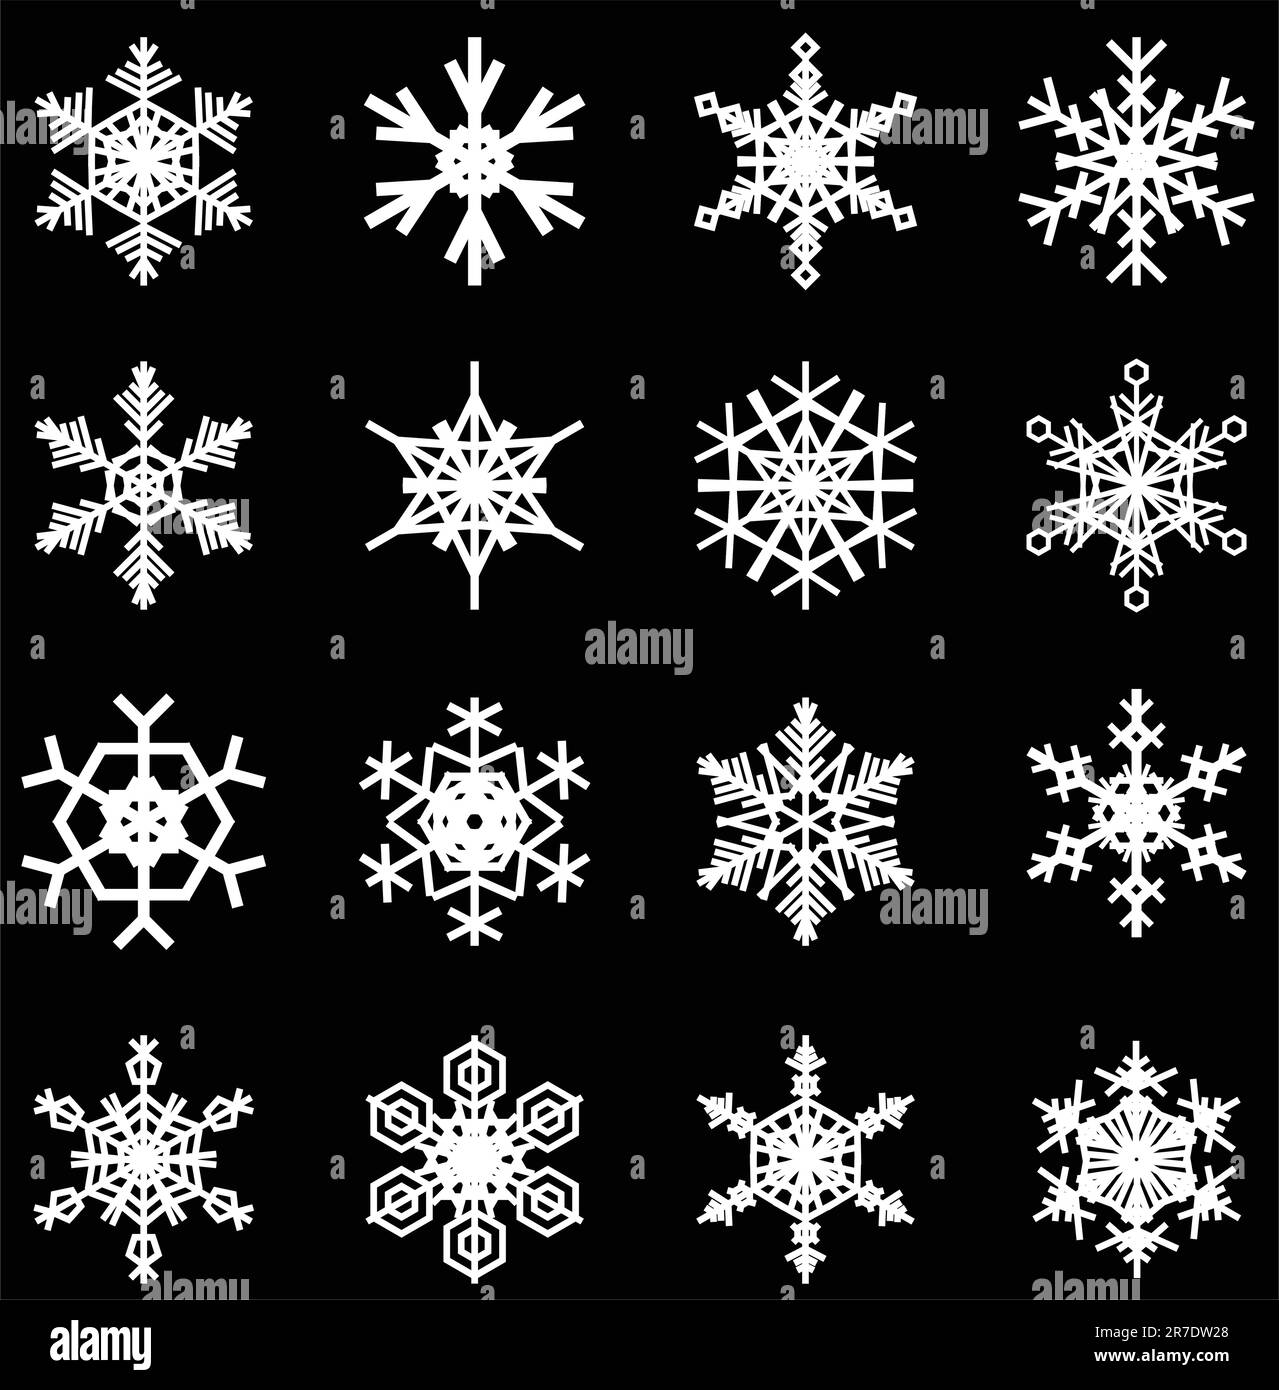 Schneeflocken-Illustrationen für Weihnachten-themed Design-Elemente. Stock Vektor